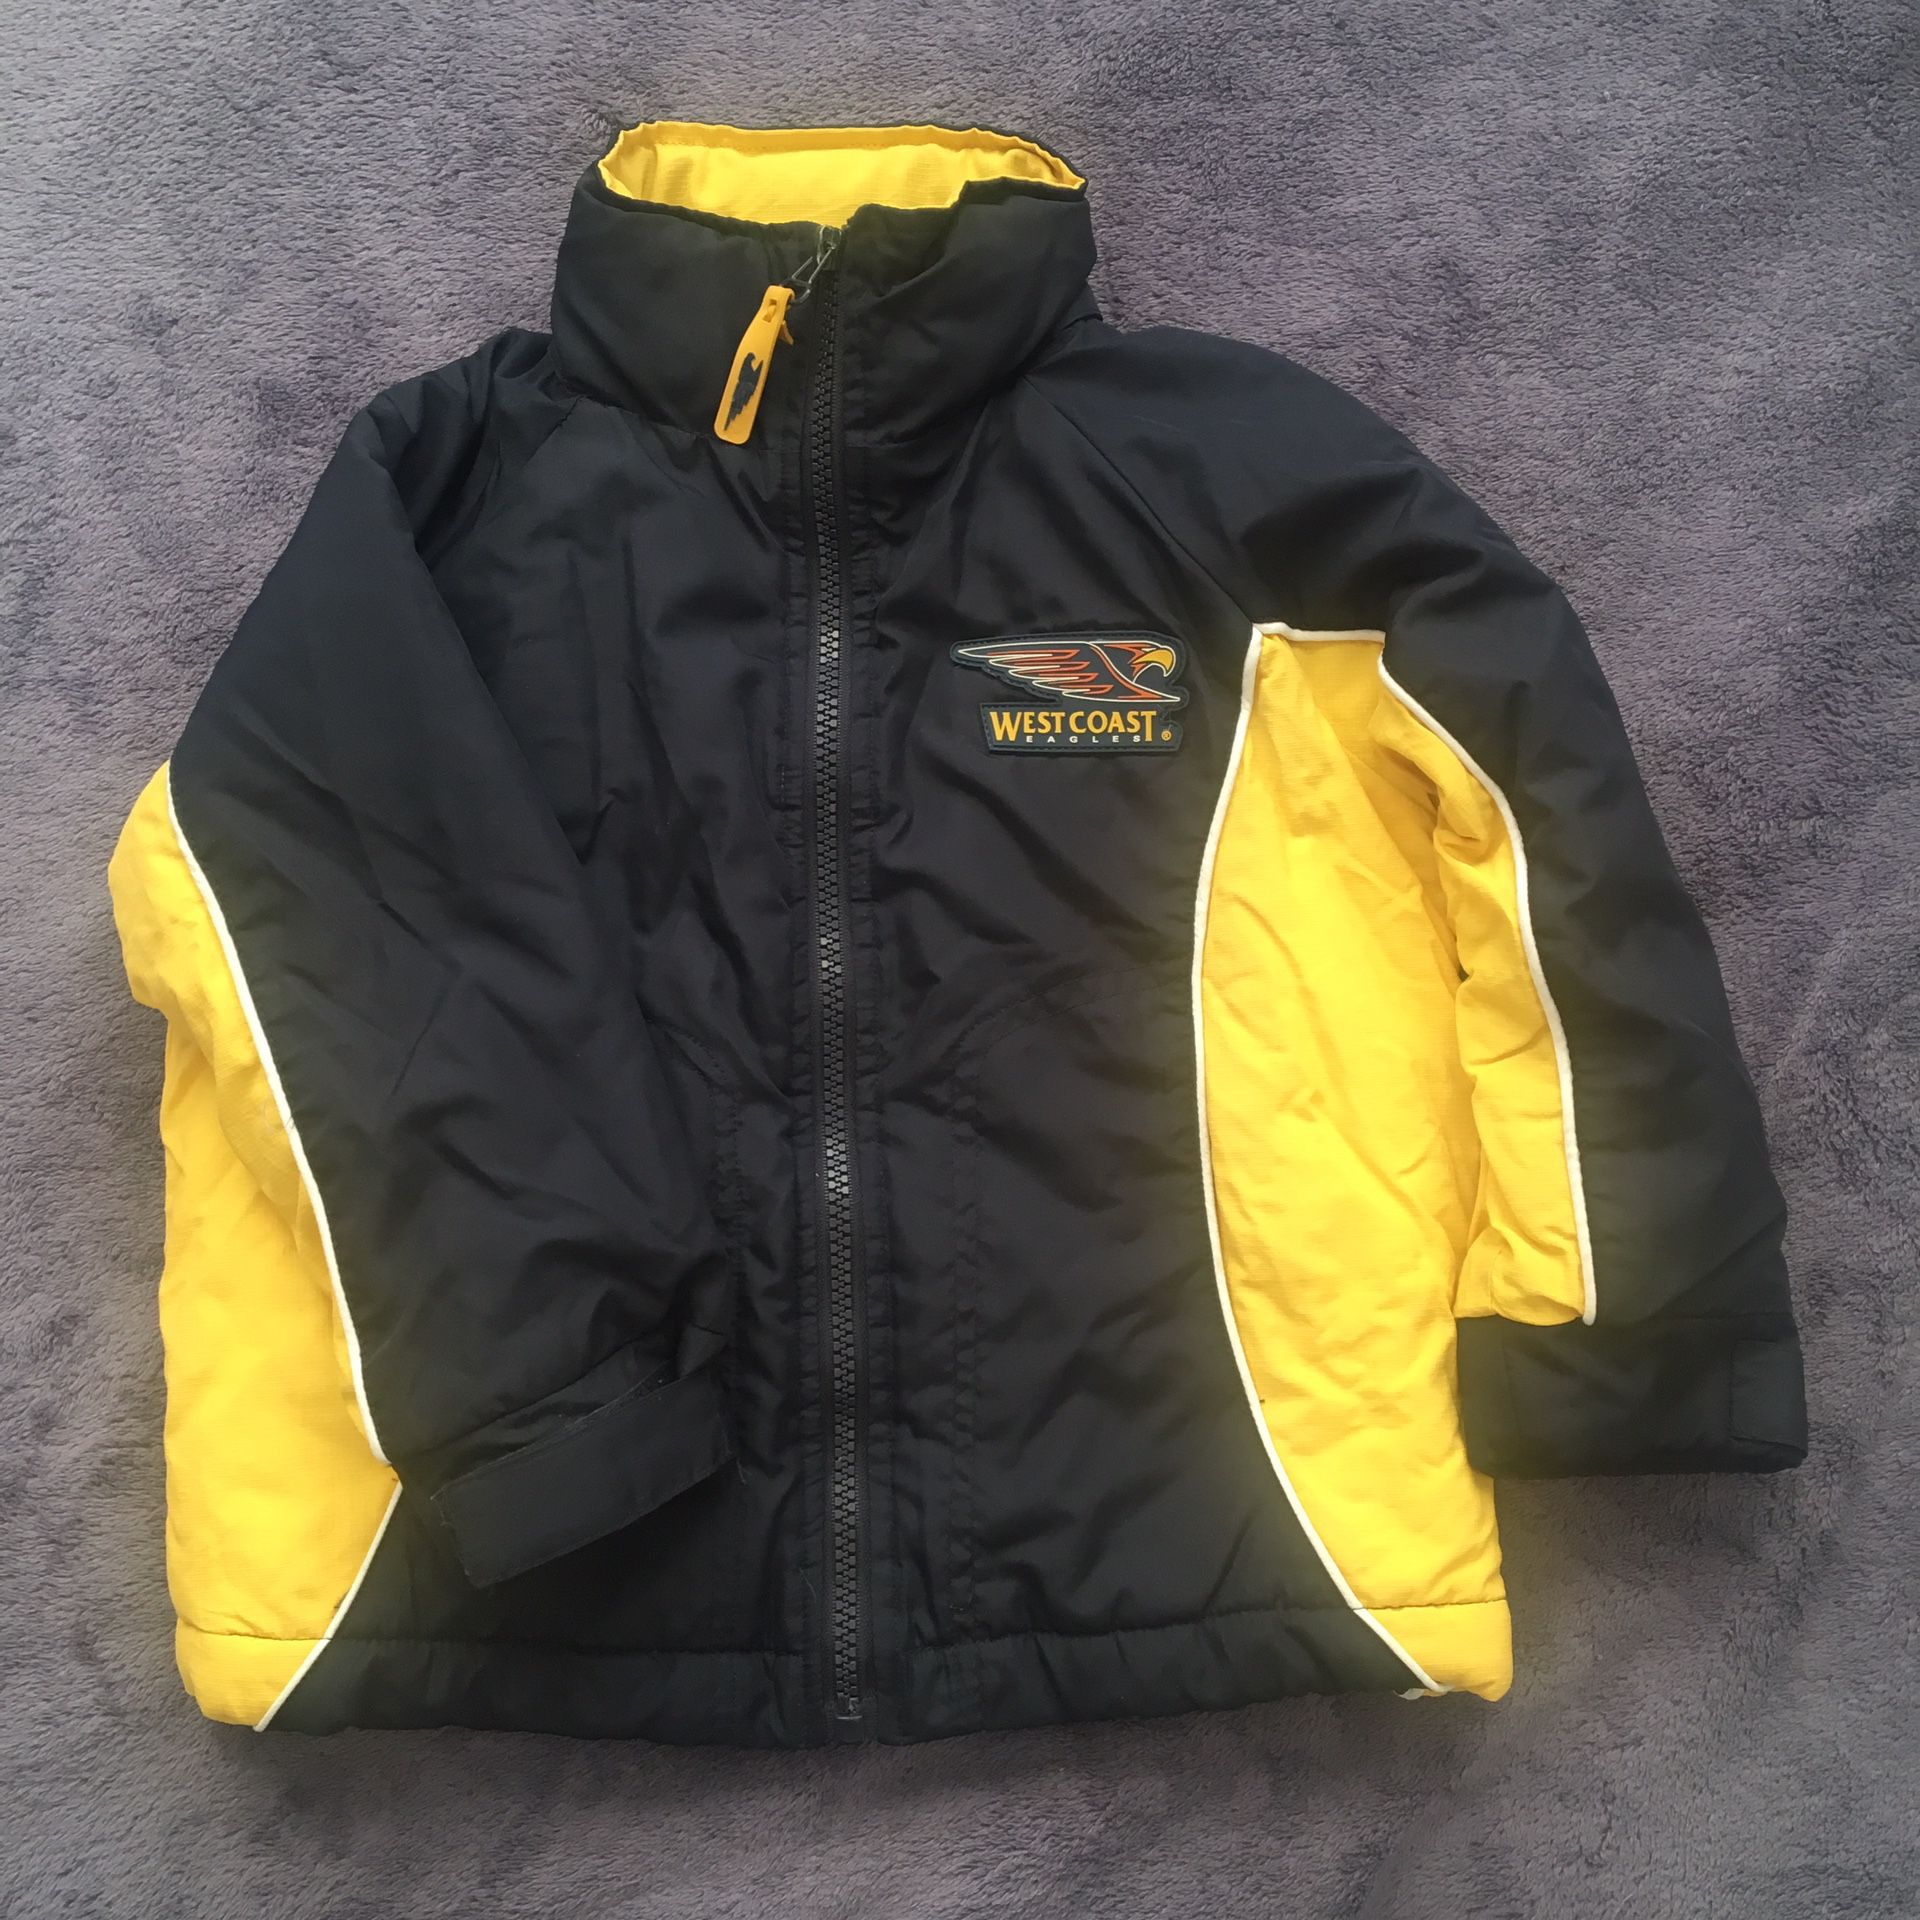 West Coast Eagles Winter Coat/Jacket - Size 2